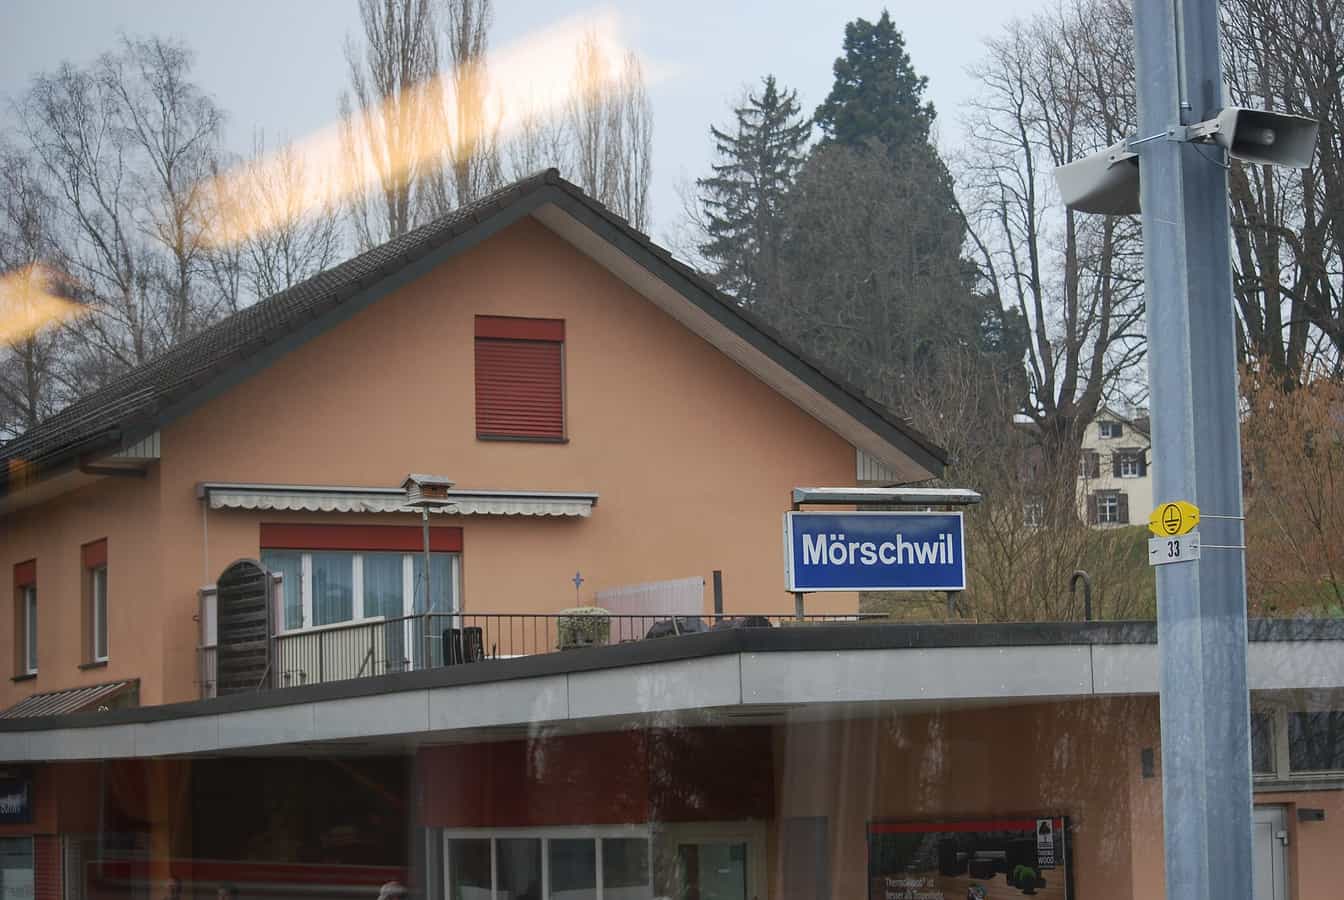 Bahnhof Mörschwil, Kanton St. Gallen, Schweiz